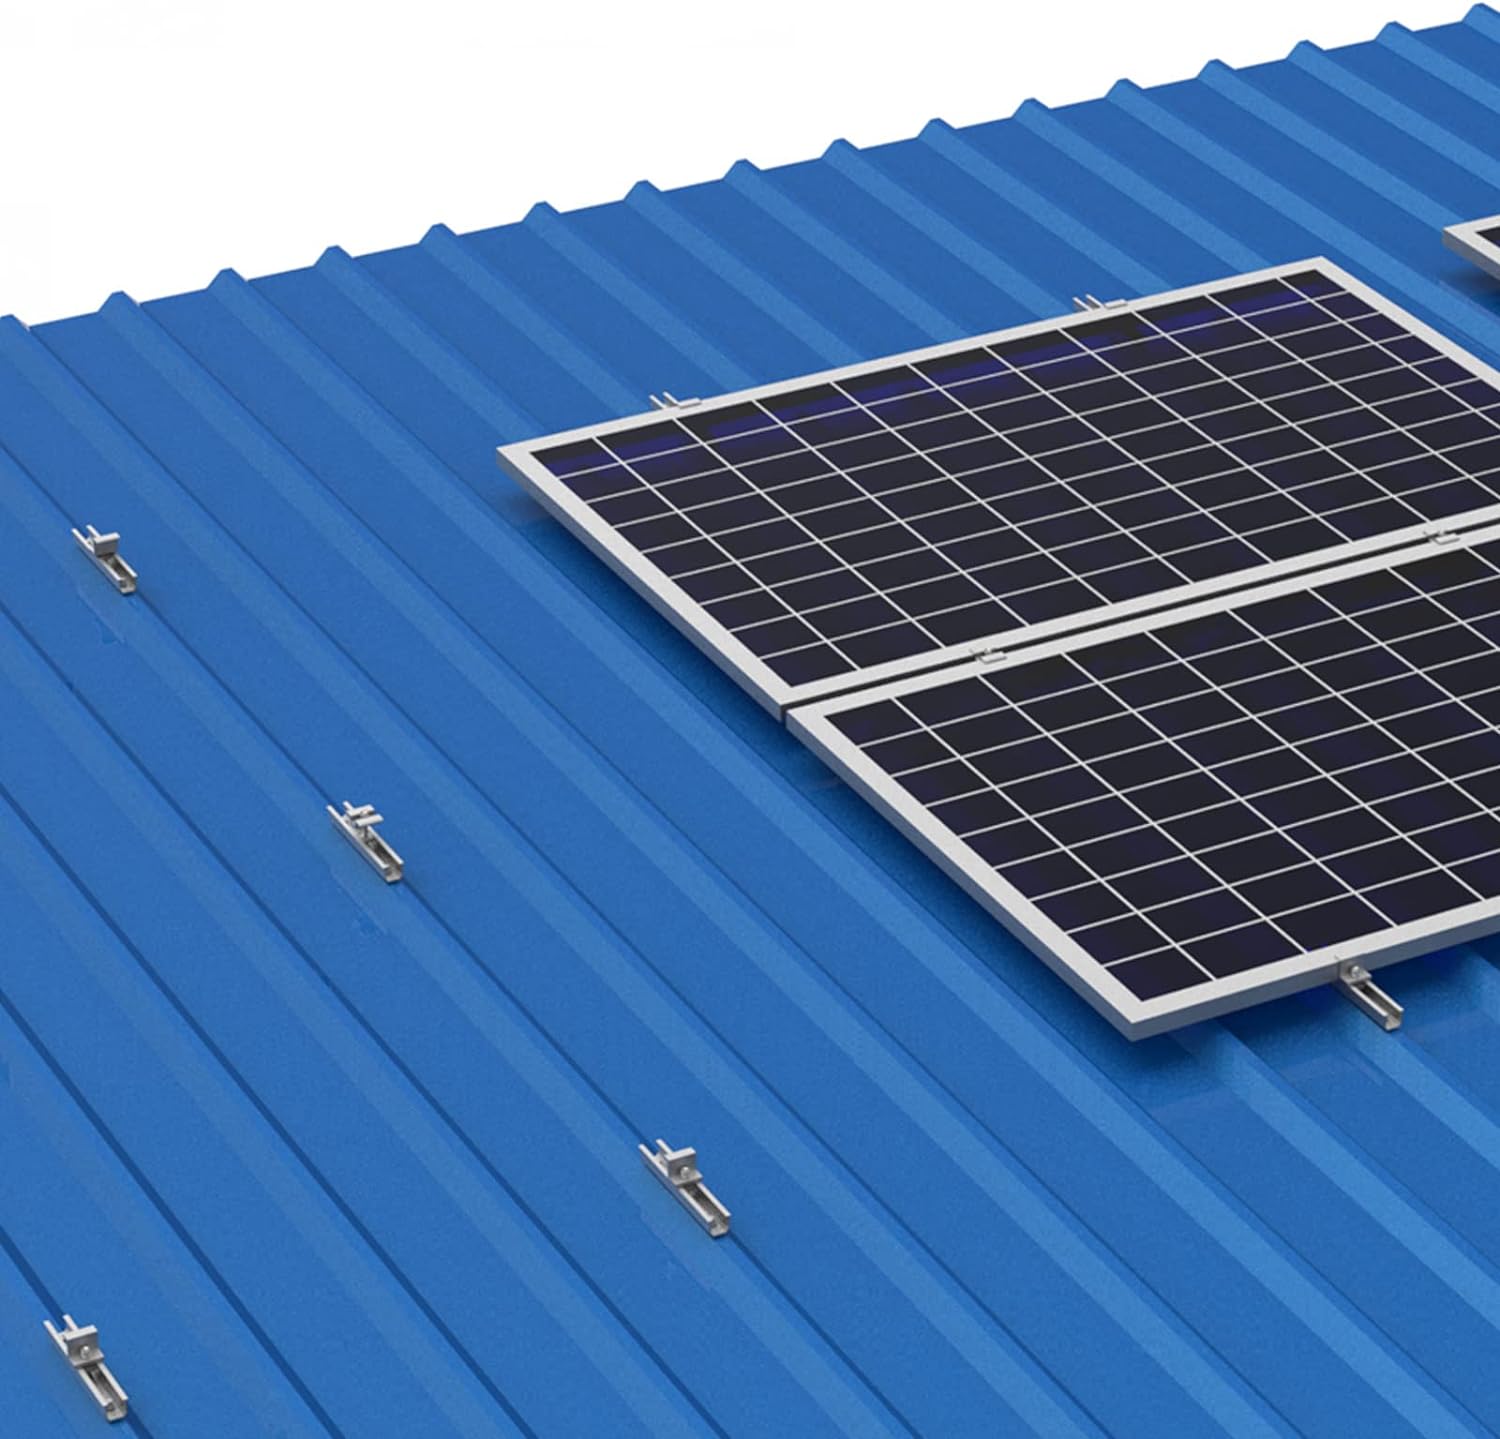 Solarmodul Halterung Flachdach, Befestigung Solarmodul Montage Set 1 Module, Alu Solarpanel Halterung Verstellbare Klemme für 30-35MM Dicke Module, PV Modul Halterung Geeignet für Flachdach Trapezdach